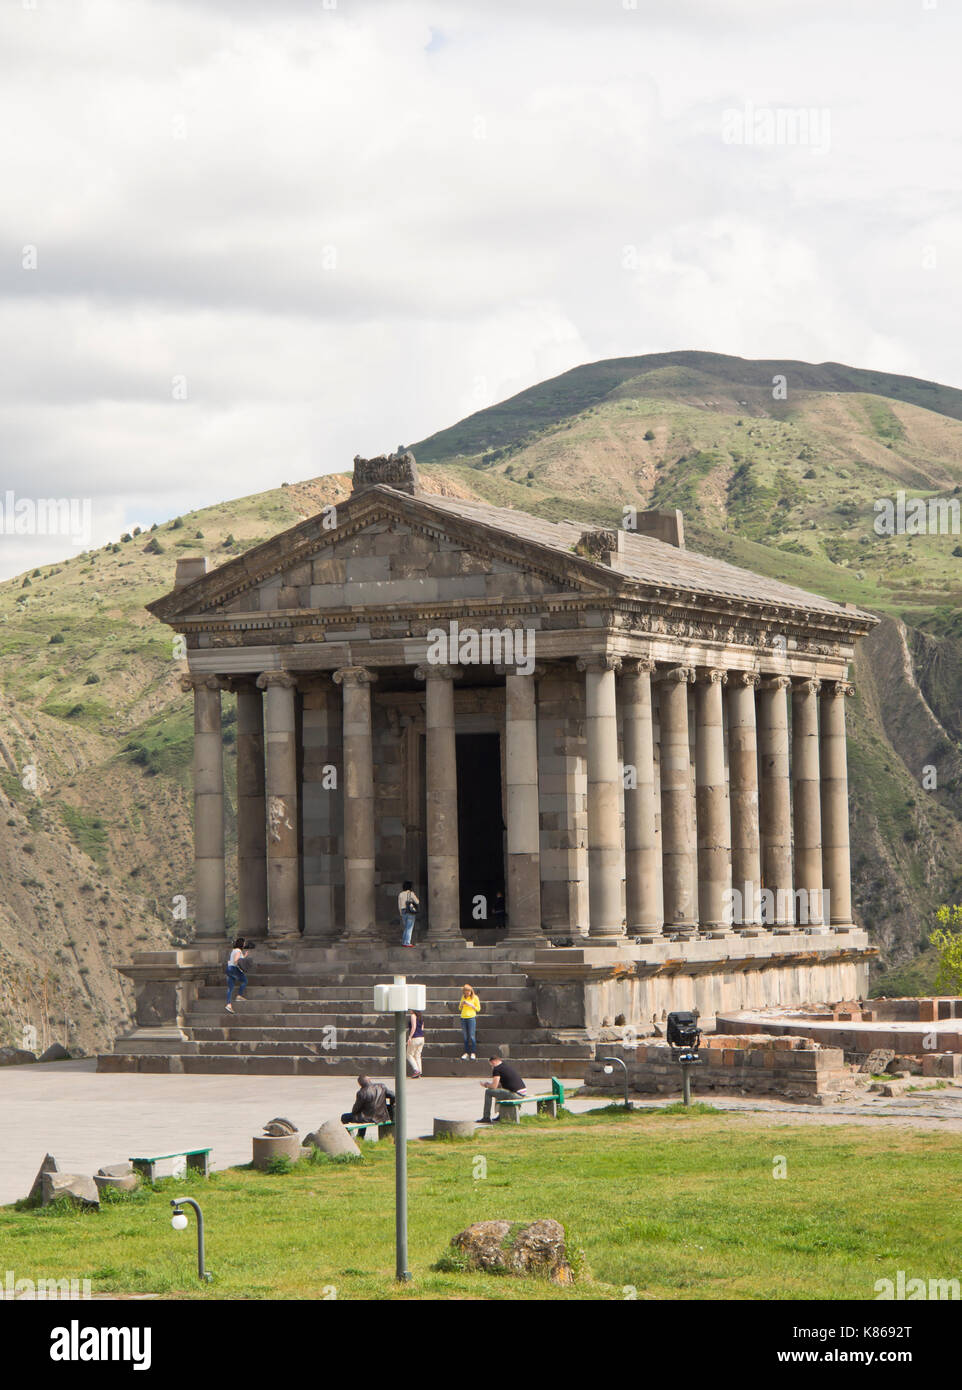 Le premier siècle après J.-C. Le temple gréco-romain au dieu soleil Mihr, à Garni, Kotajk province, l'Arménie, magnifiquement situé sur le bord d'une gorge Banque D'Images